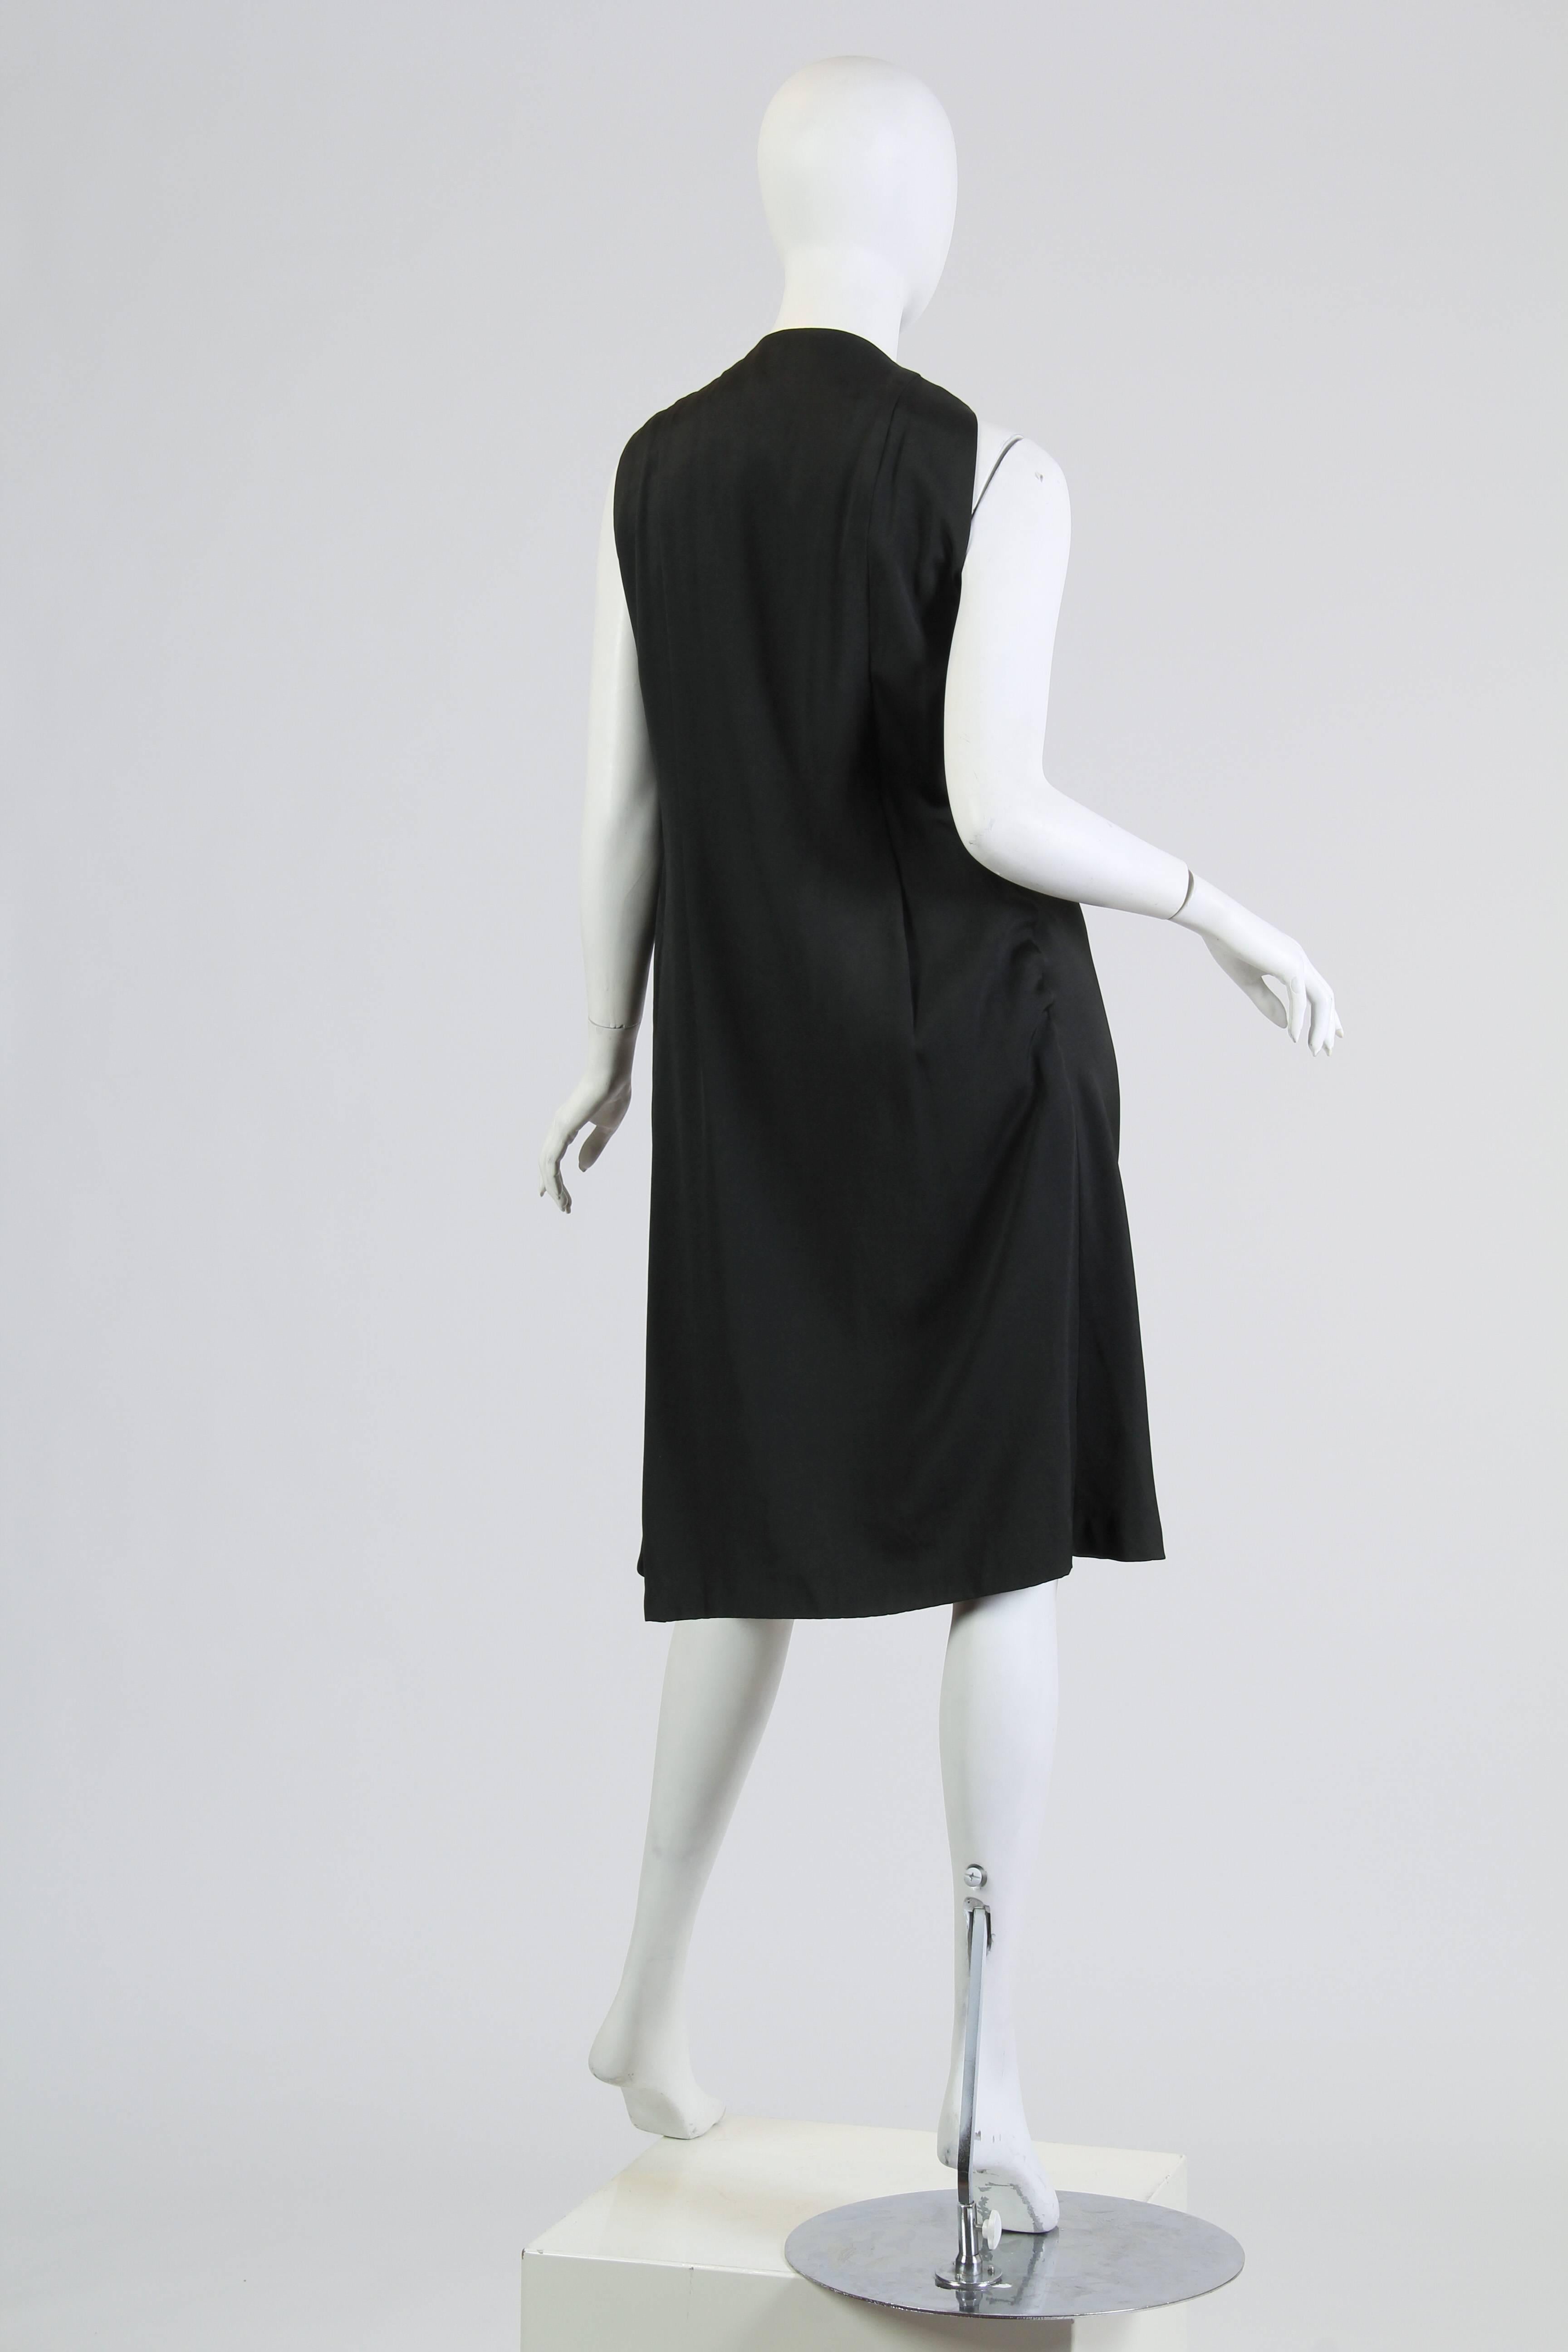 Black Very Unique Avant Guarde Pauline Trigere Dress